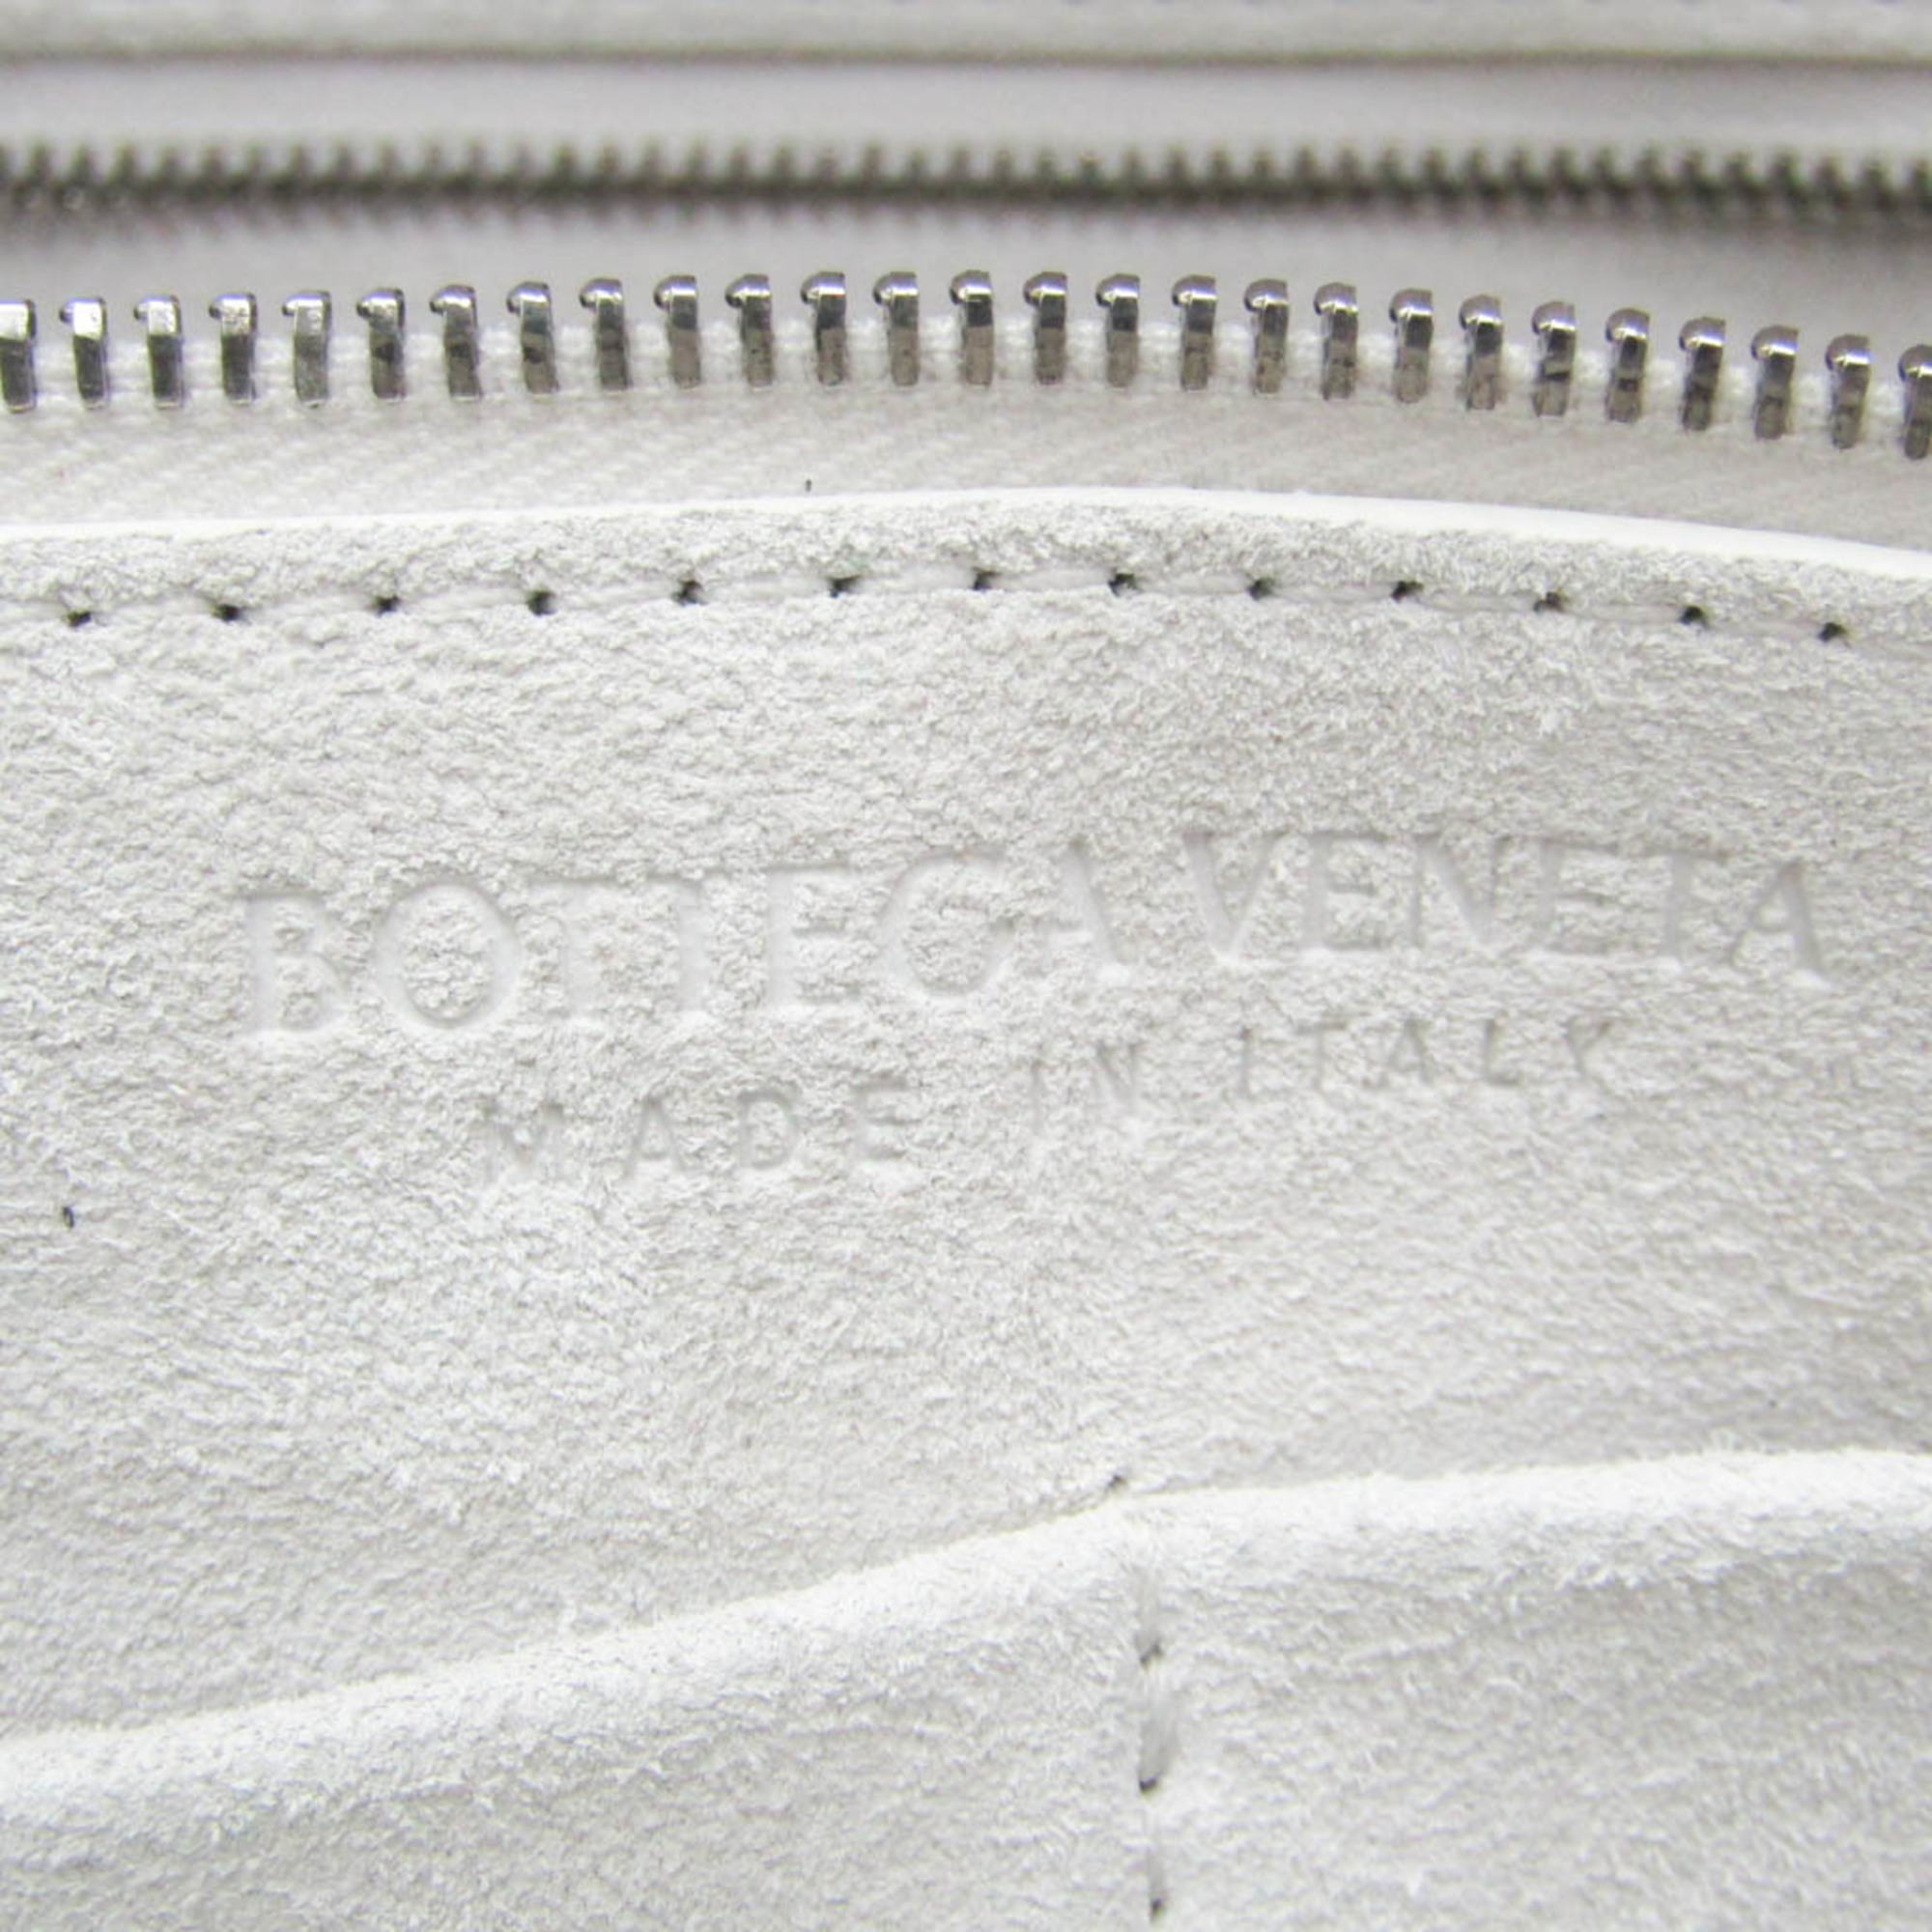 ボッテガ・ヴェネタ(Bottega Veneta) ARCO TOOL ラージ バッファロー 690247 メンズ,レディース レザー ハンドバッグ,ショルダーバッグ ホワイト